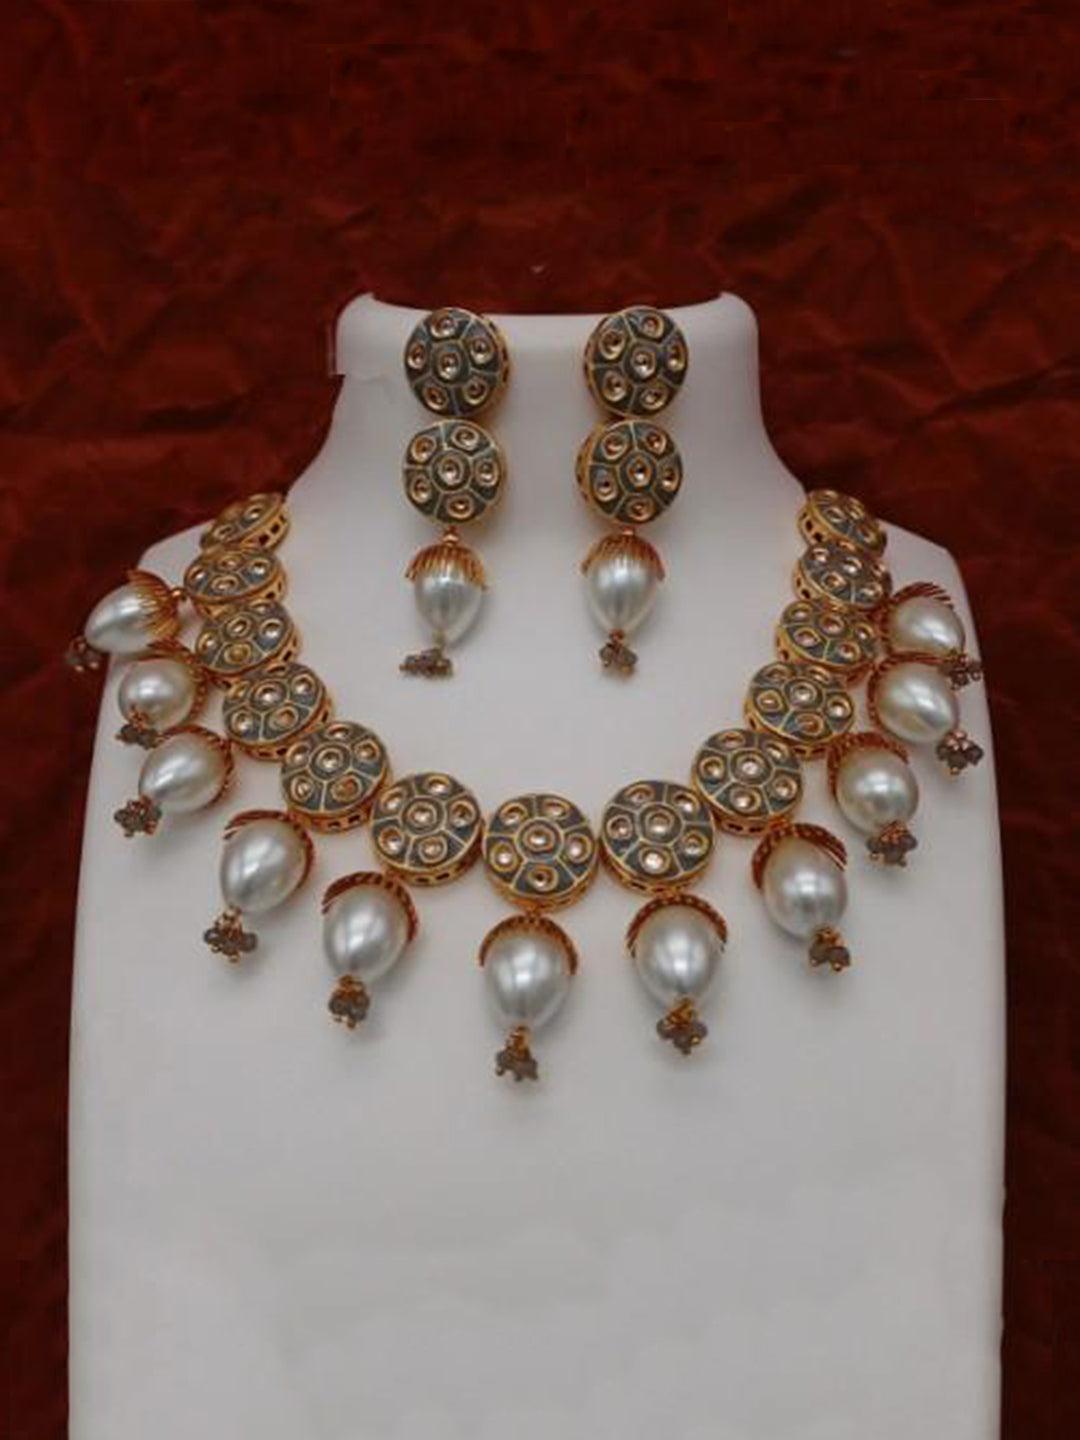 Ishhaara Grey Jadau Meena Pearls Necklace And Earring Set